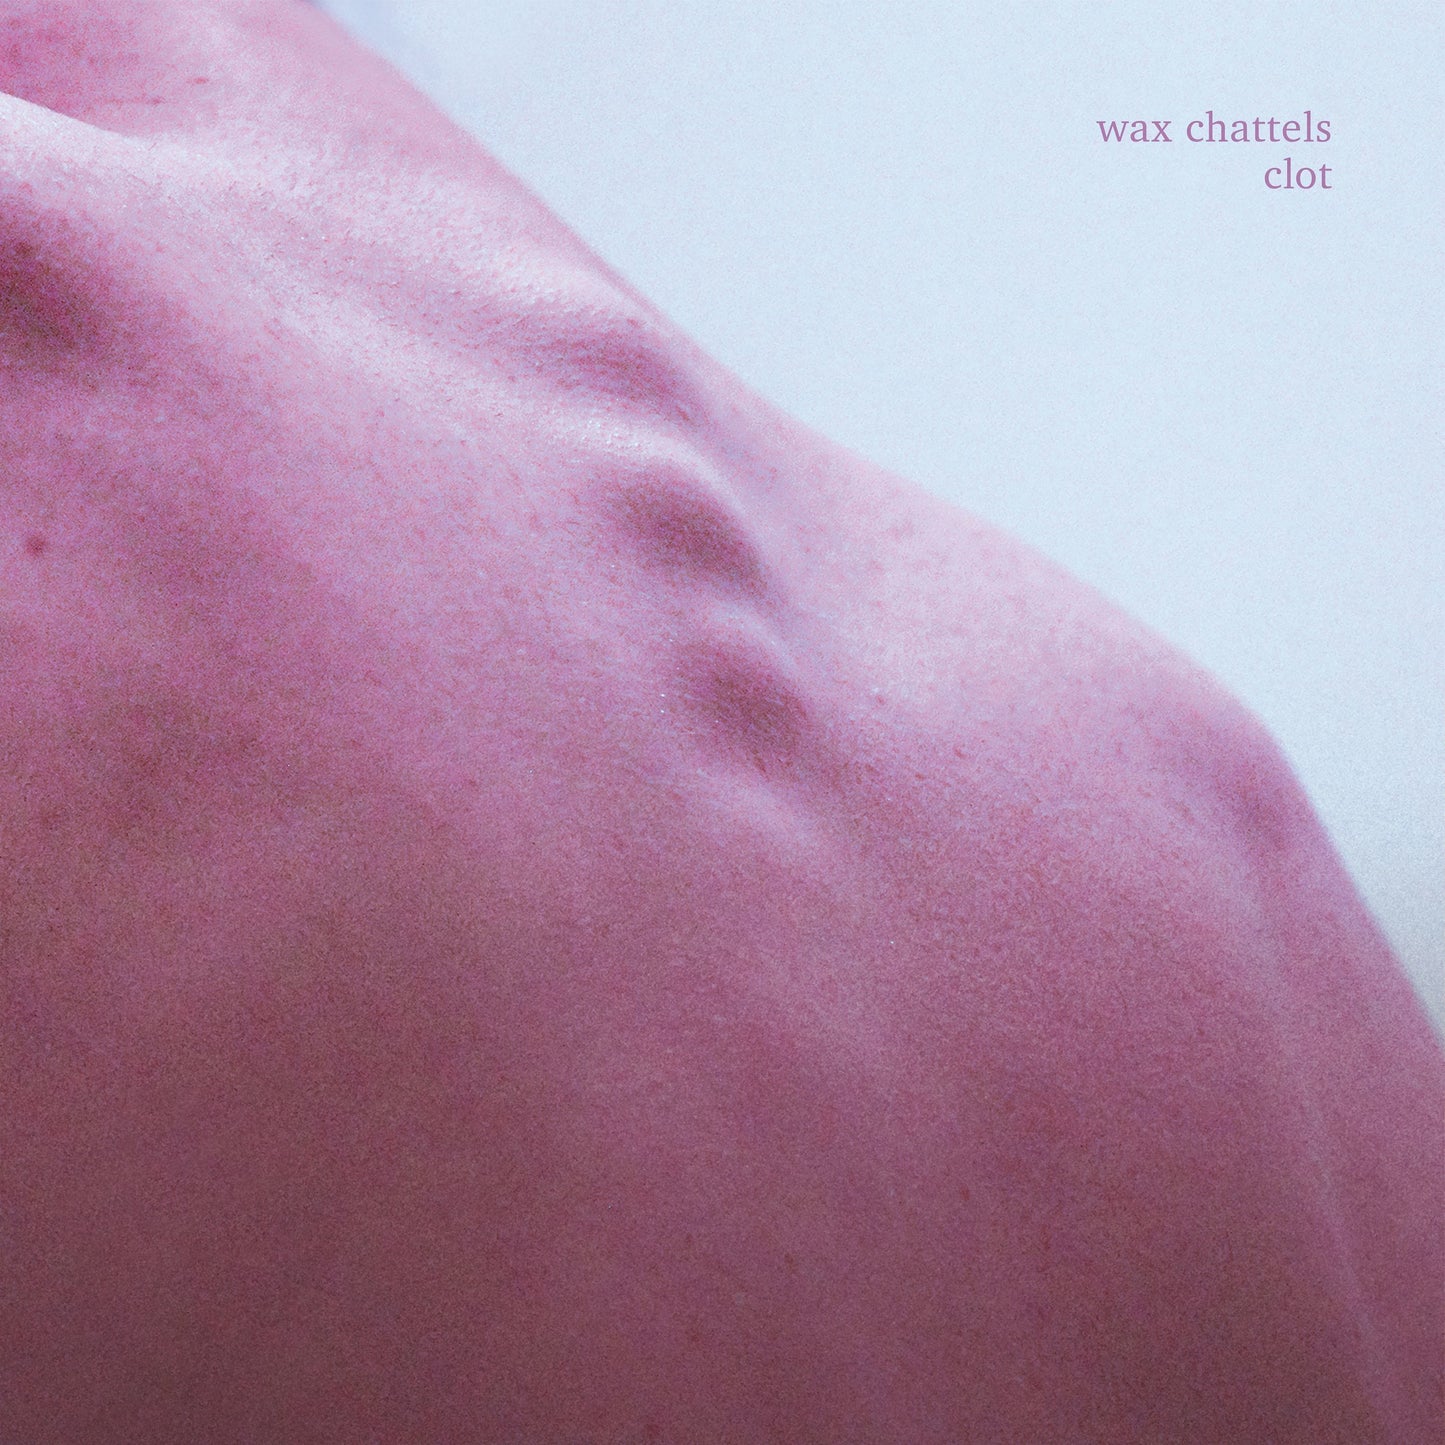 Wax Chattels - Clot (Orchid Vinyl)